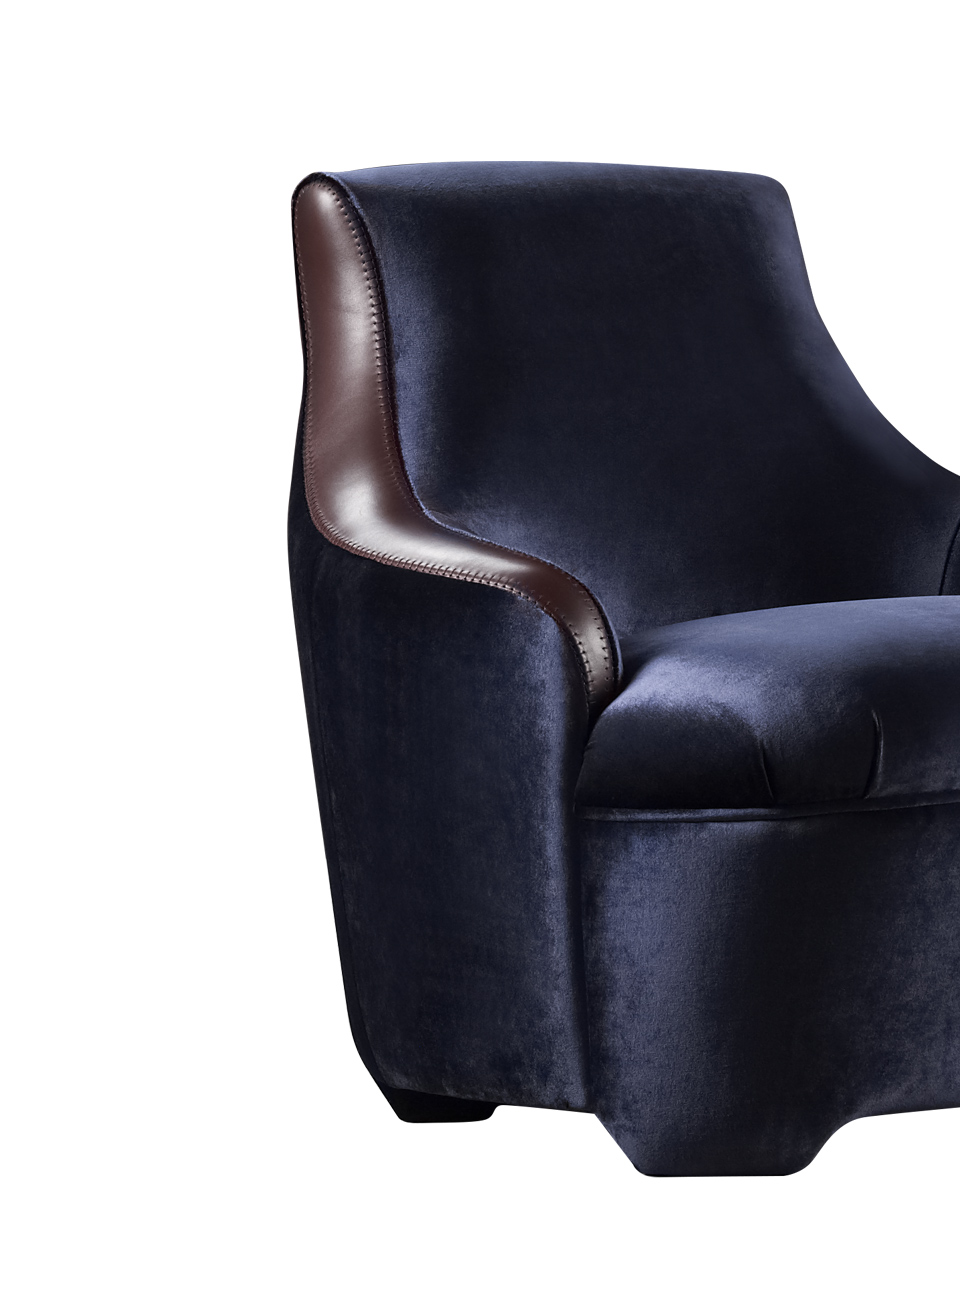 Détail de Gioconda e Giocondina, deux fauteuils en tissu avec des finitions en cuir. Ce meuble figure dans le catalogue Promemoria | Promemoria